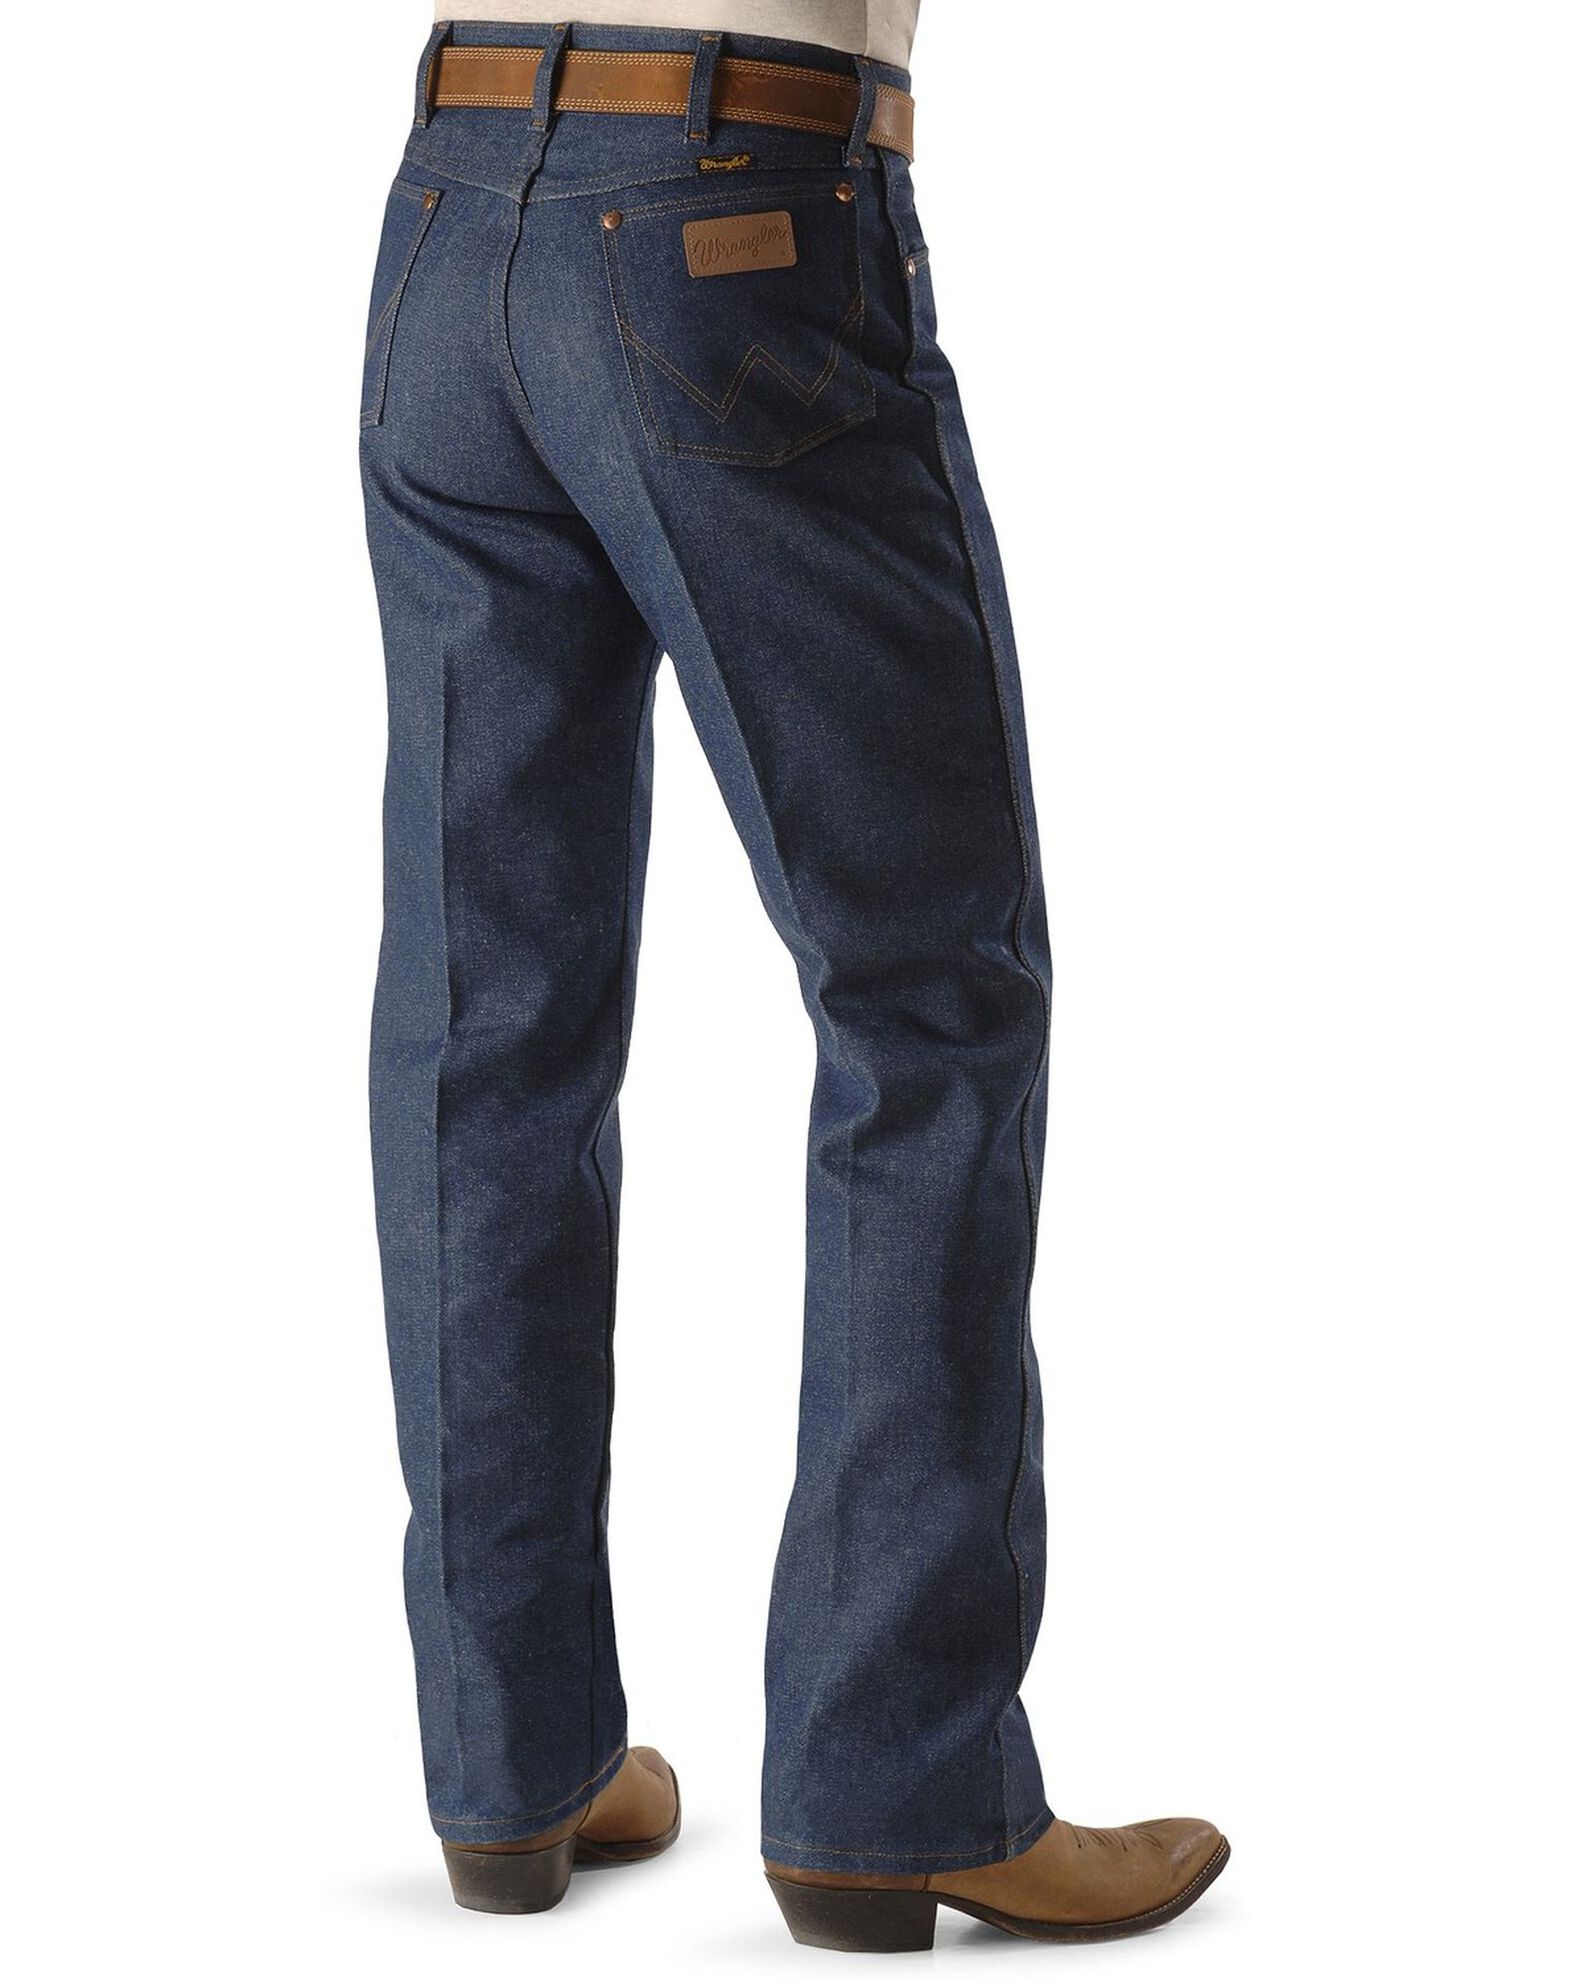 Wrangler Men's 13MWZ Cowboy Cut Rigid Original Fit Jeans - 38